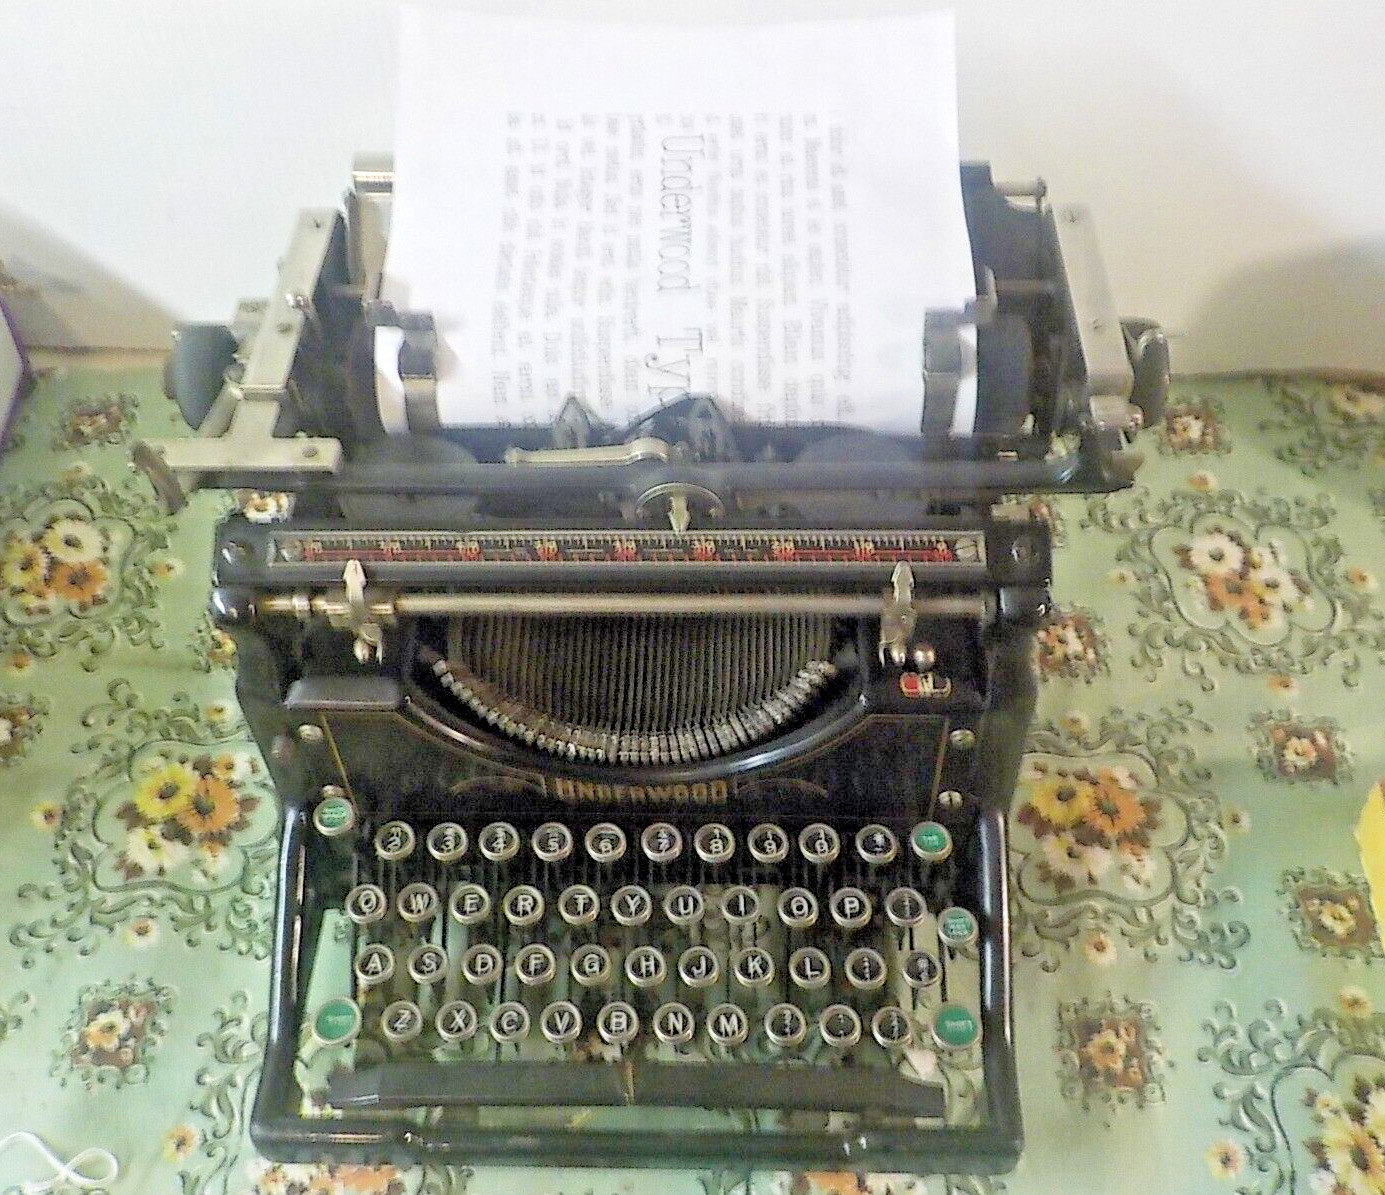 EXCELLENT Cond. 1935 Underwood 11 Working Vintage Desktop Typewriter